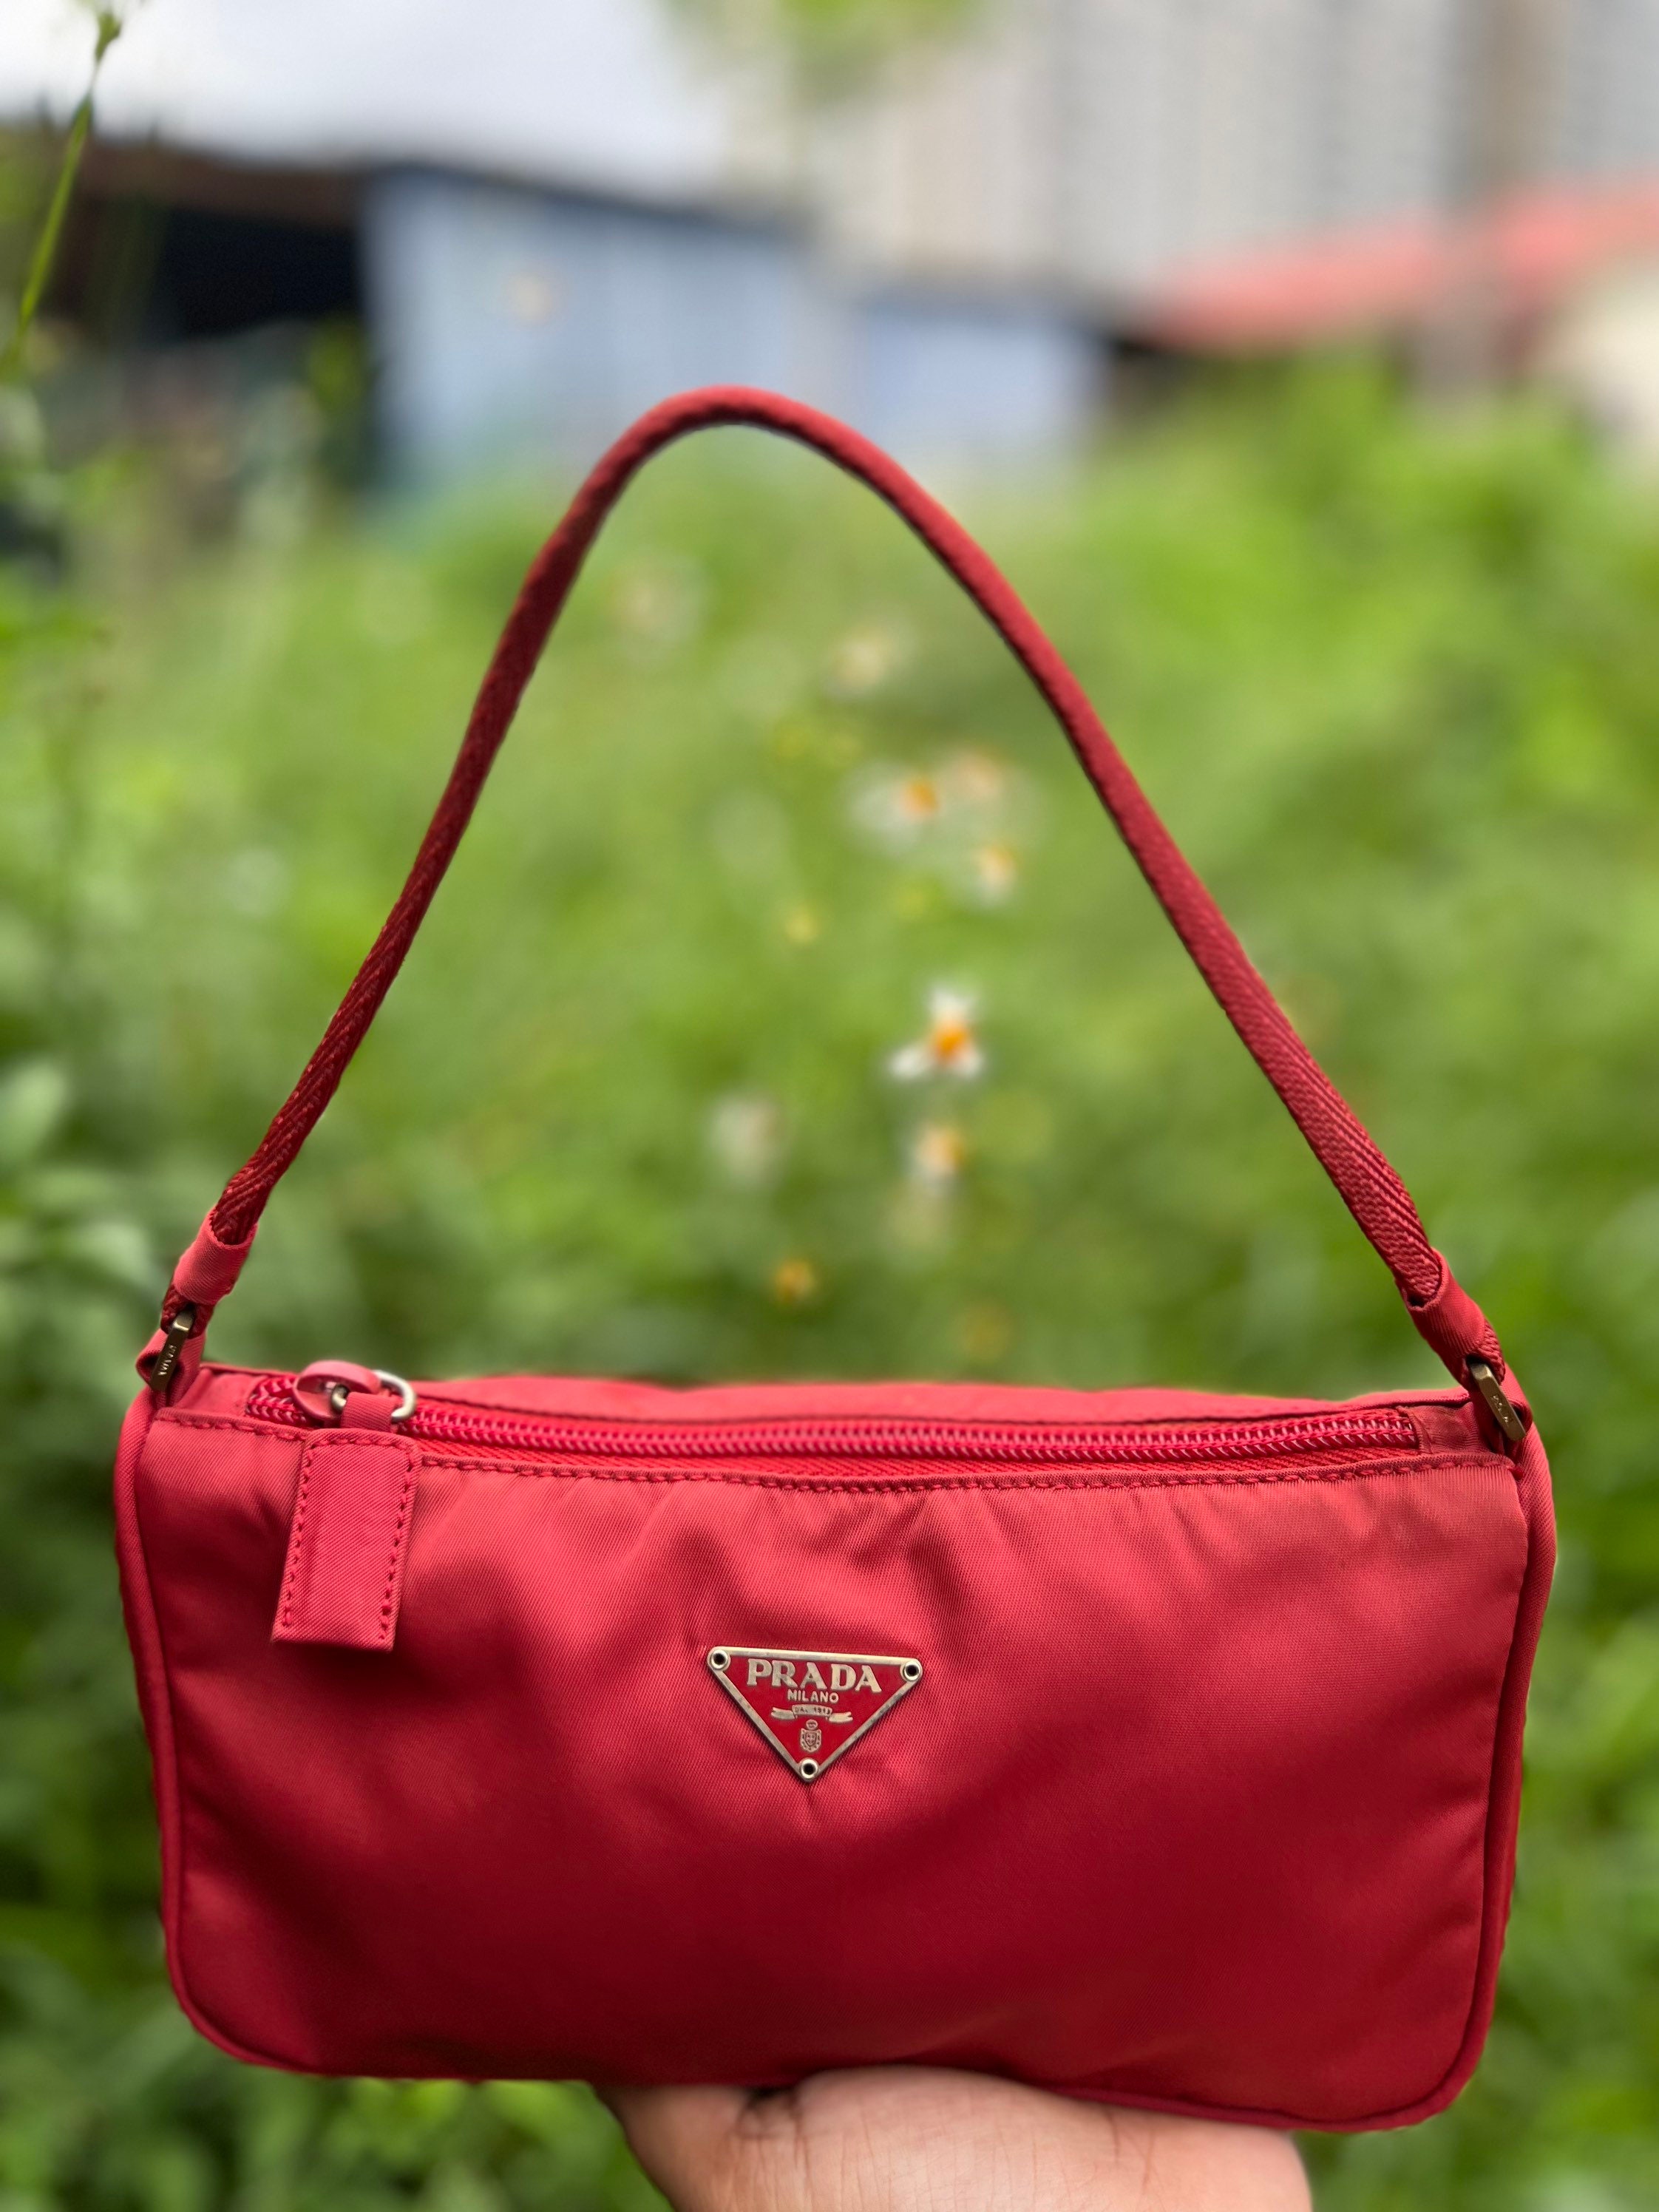 prada red easy shoulder bag - Marmalade